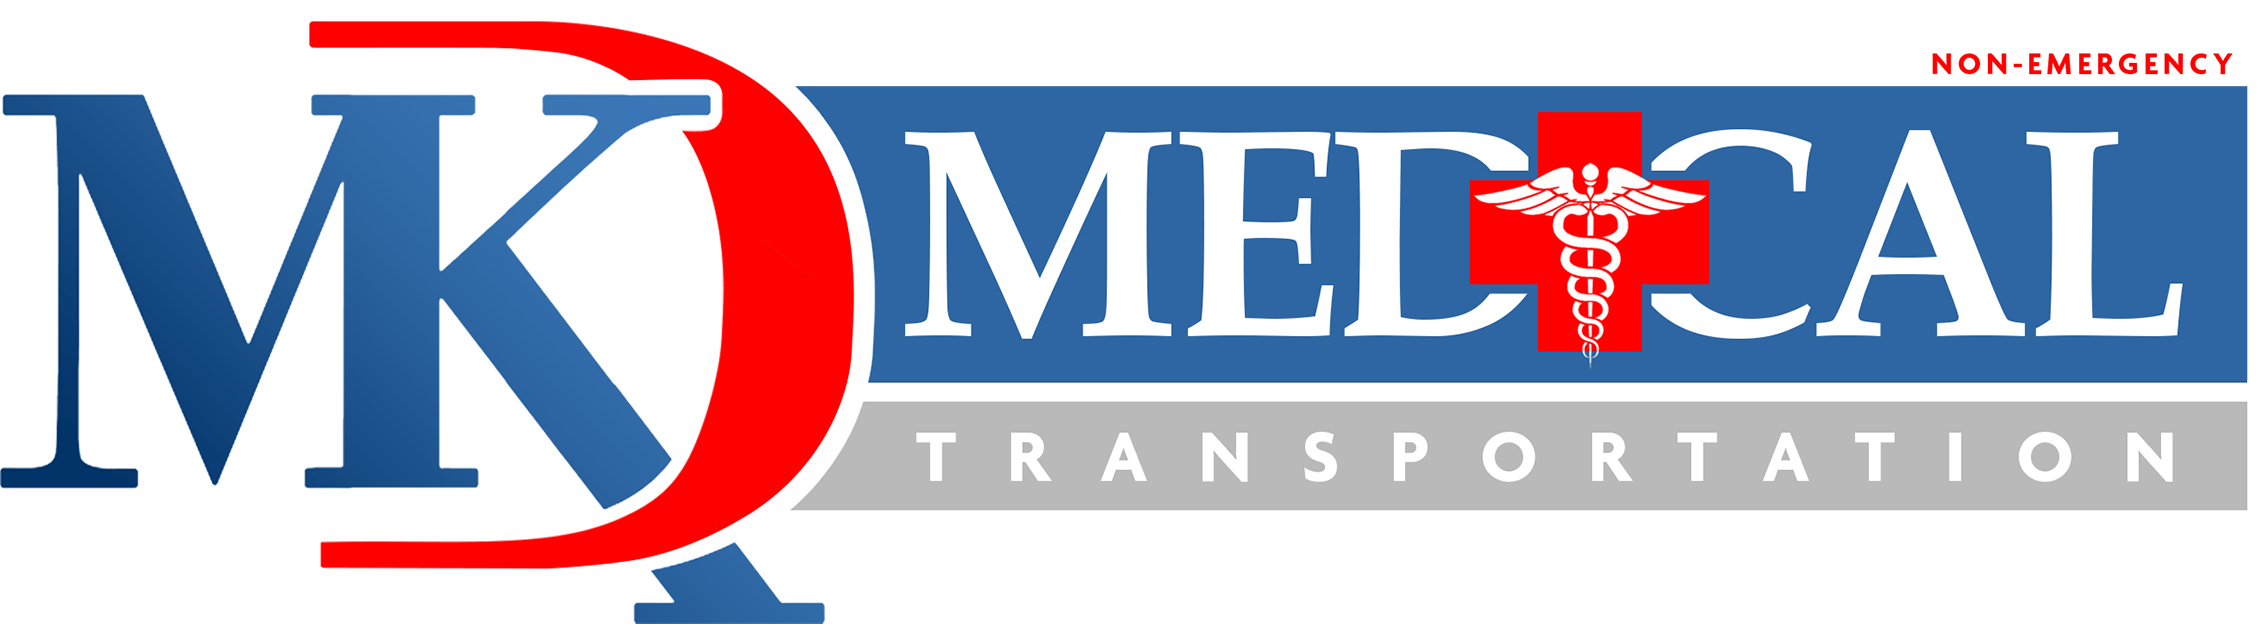 MKD Medical Transportation